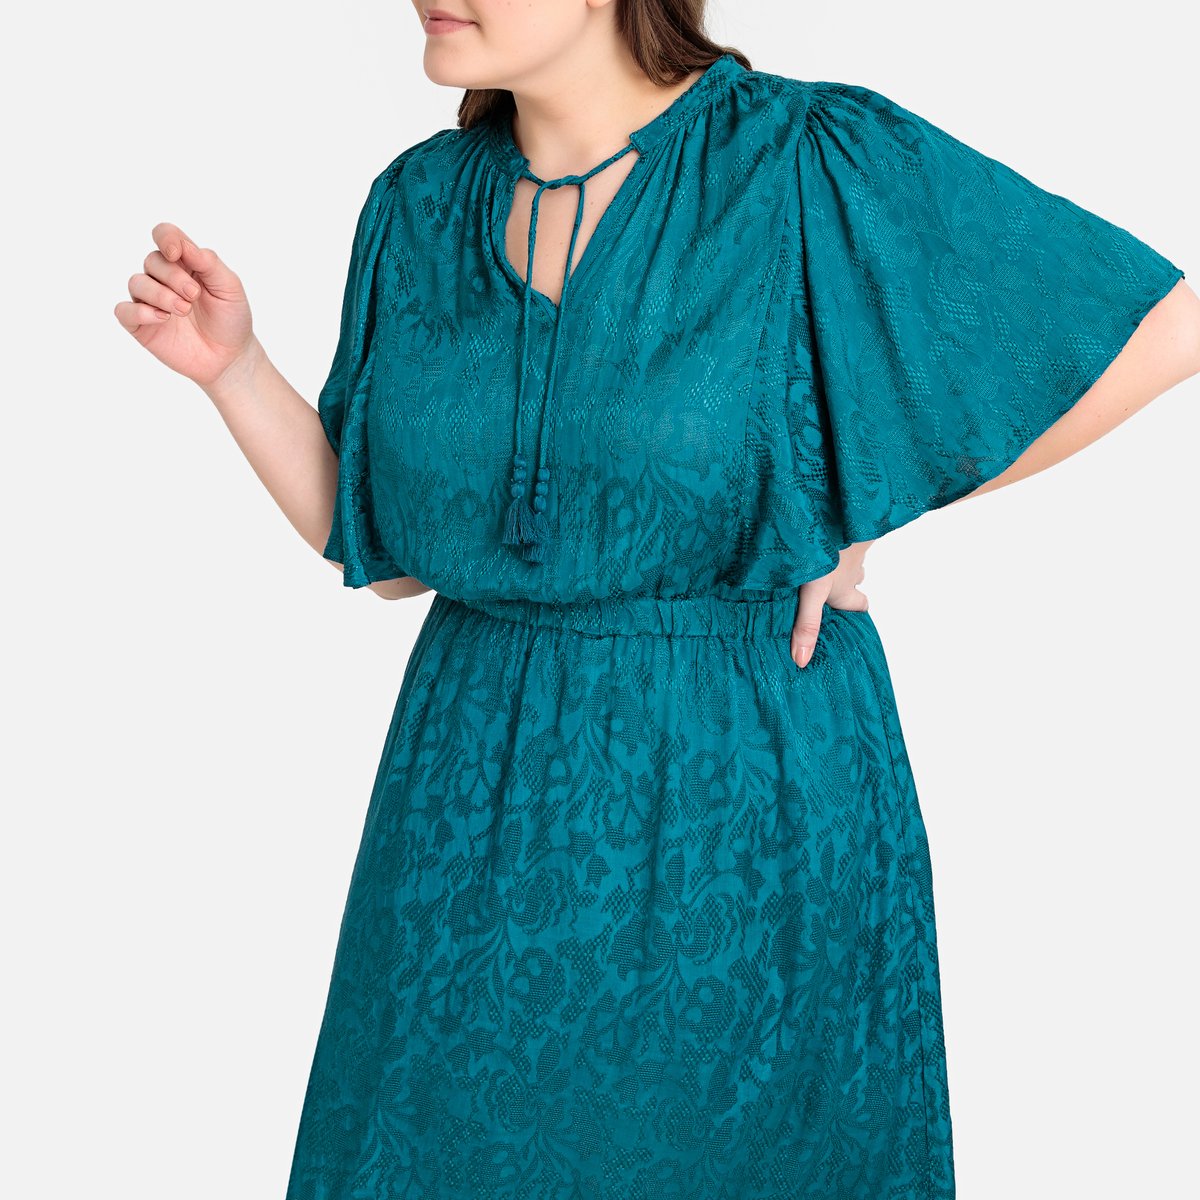 Платье La Redoute Прямое жаккардовое средней длины 46 (FR) - 52 (RUS) синий, размер 46 (FR) - 52 (RUS) Прямое жаккардовое средней длины 46 (FR) - 52 (RUS) синий - фото 3